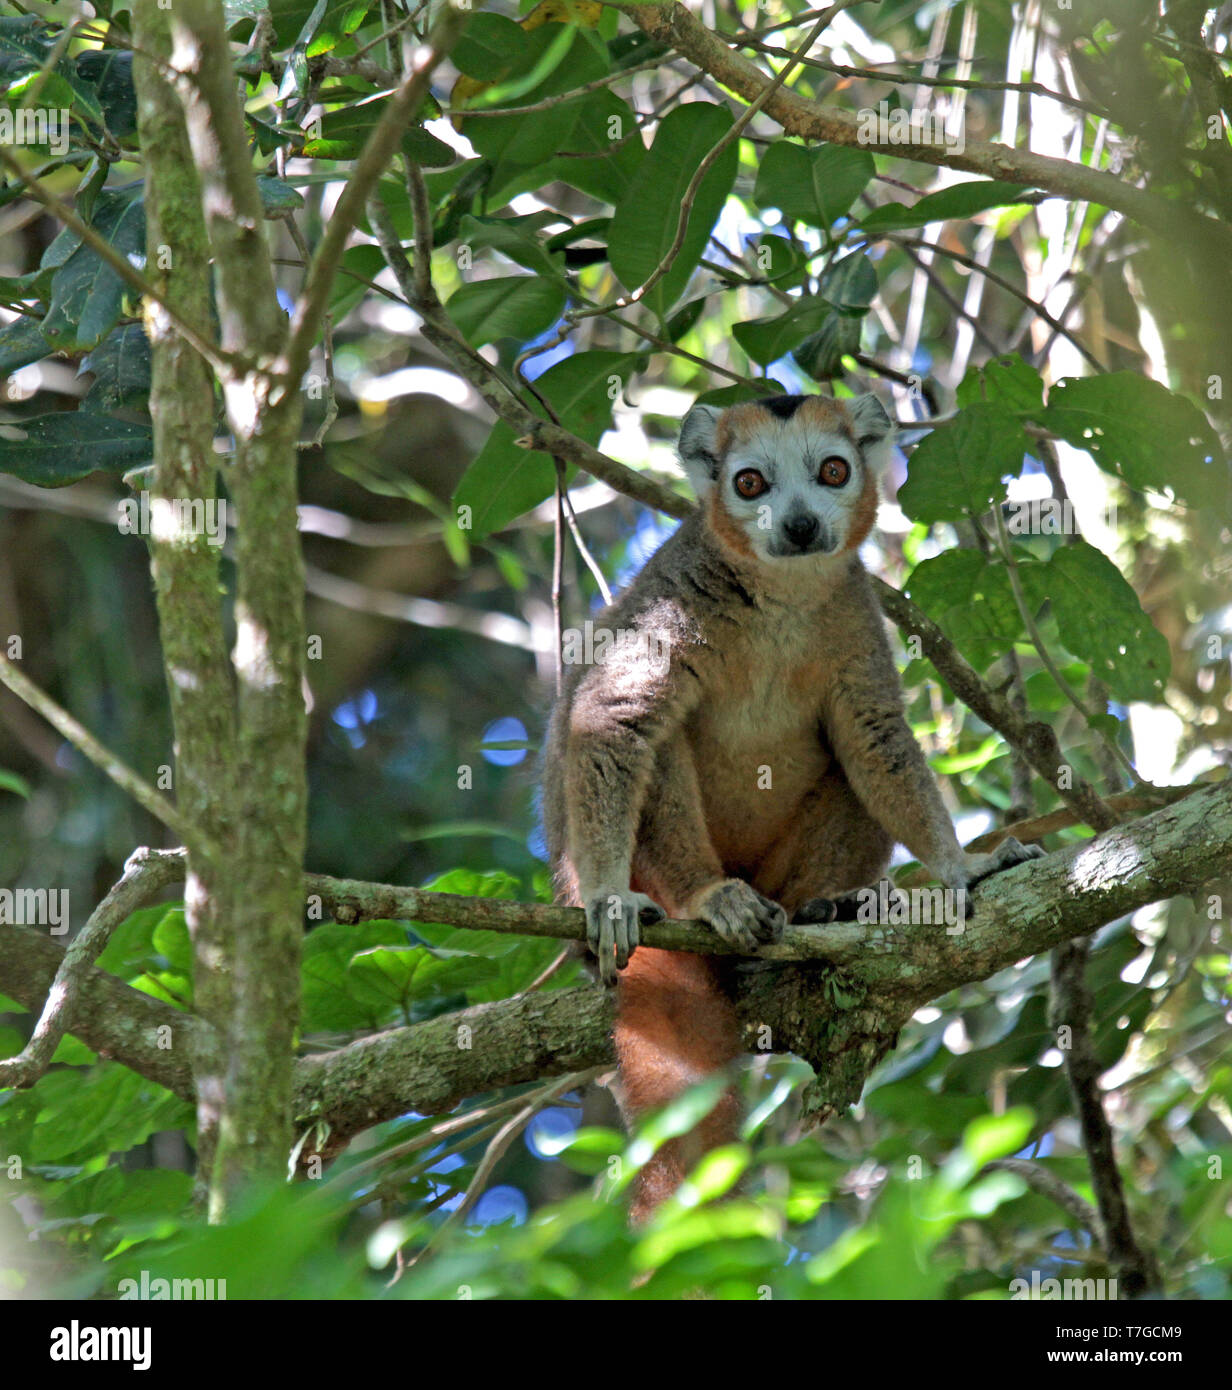 (Eulemur gekrönt lemur Coronatus) in seinem natürlichen Lebensraum auf Madagaskar. Hohe in der Haube eines trockenen Laubwald an der nördlichen Spitze von Madaga gehockt Stockfoto